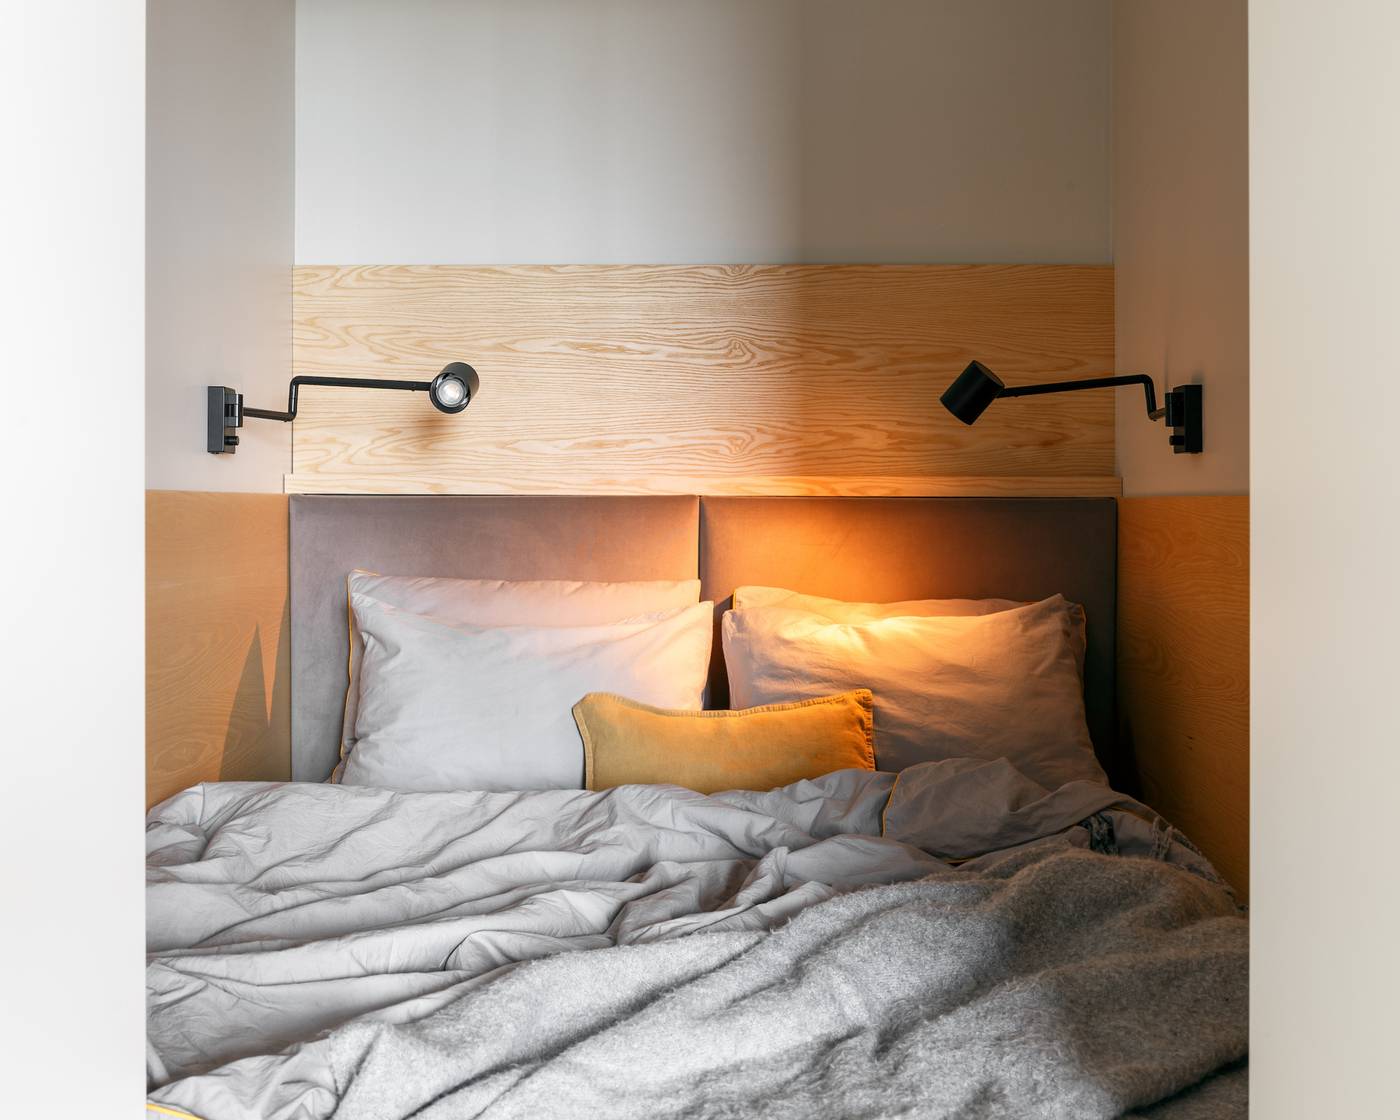 Bên trong phòng ngủ thiết kế cực kỳ đơn giản với giường ngủ êm ái, hai chiếc đèn gắn tường bố trí đối xứng để cung cấp ánh sáng khi đọc sách.